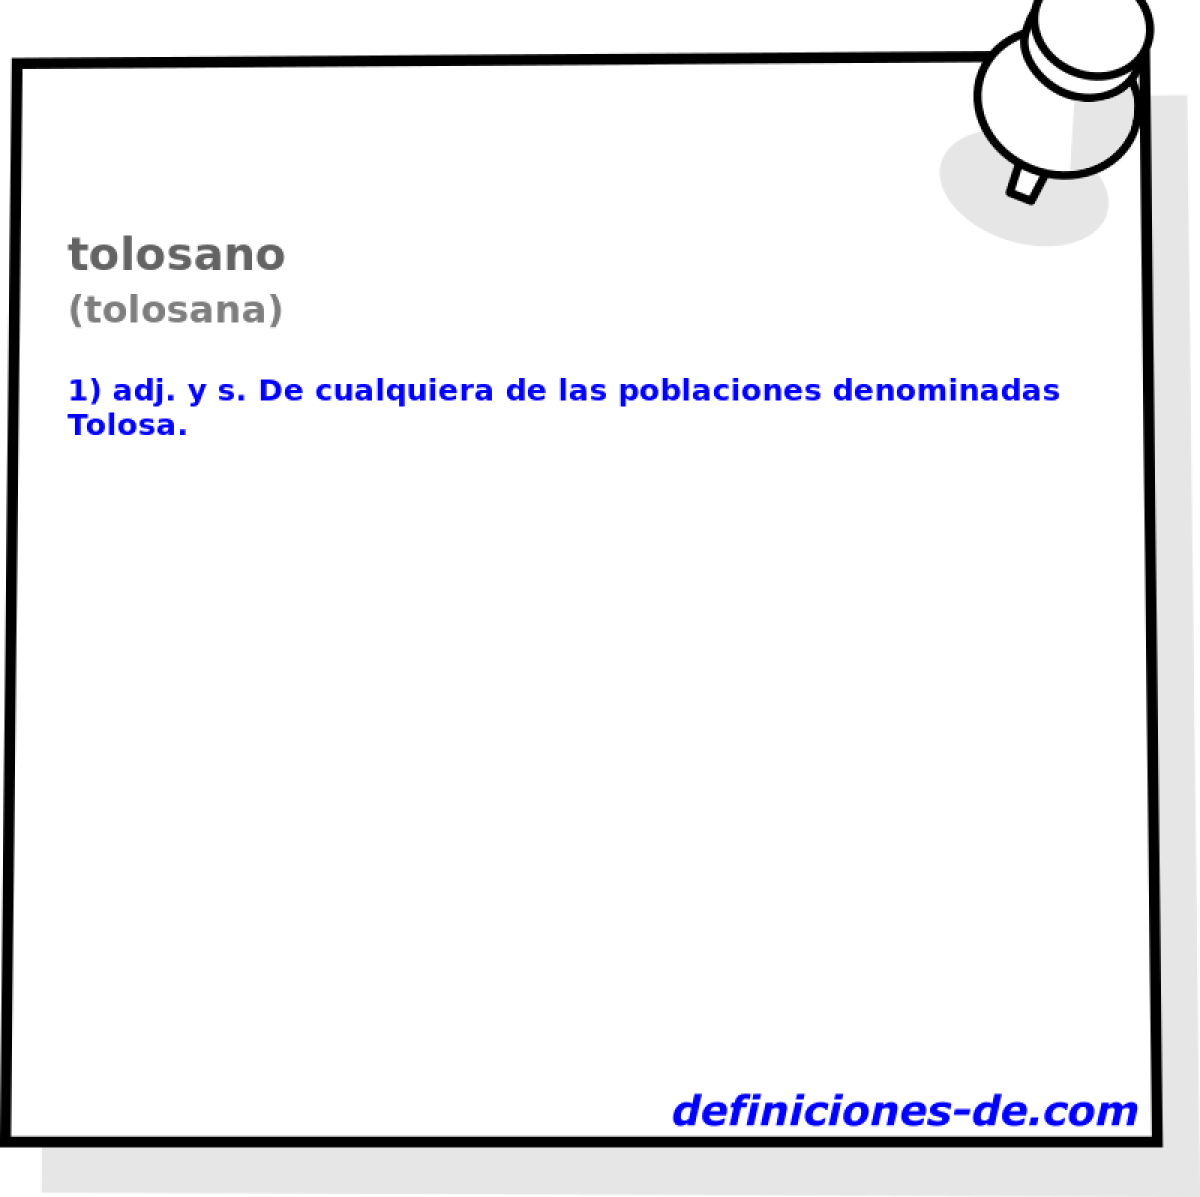 tolosano (tolosana)